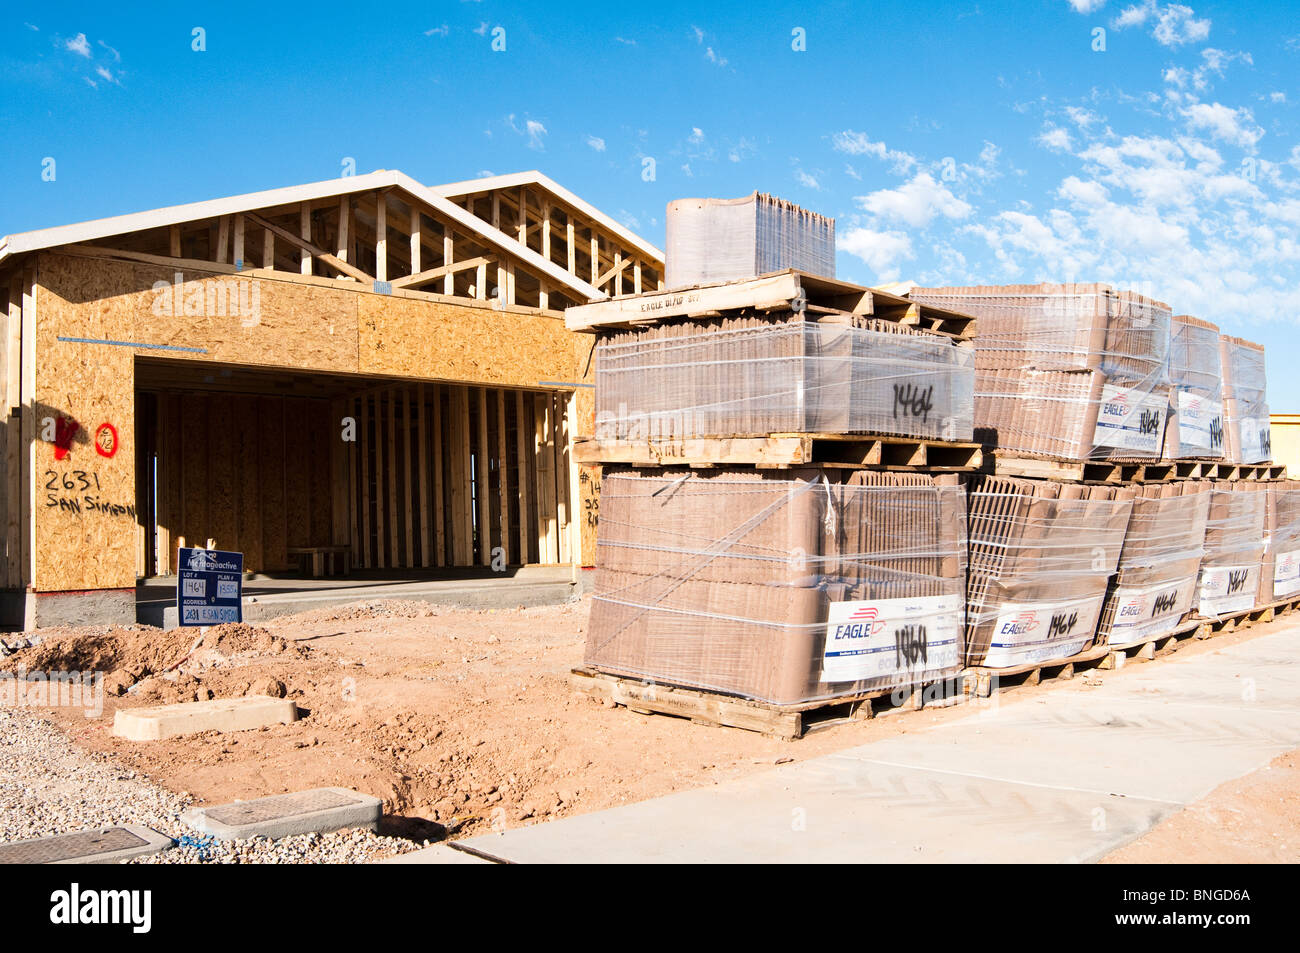 Les tuiles sont empilées sur le site de construction d'une nouvelle maison à ossature bois construite en début de l'Arizona. Banque D'Images